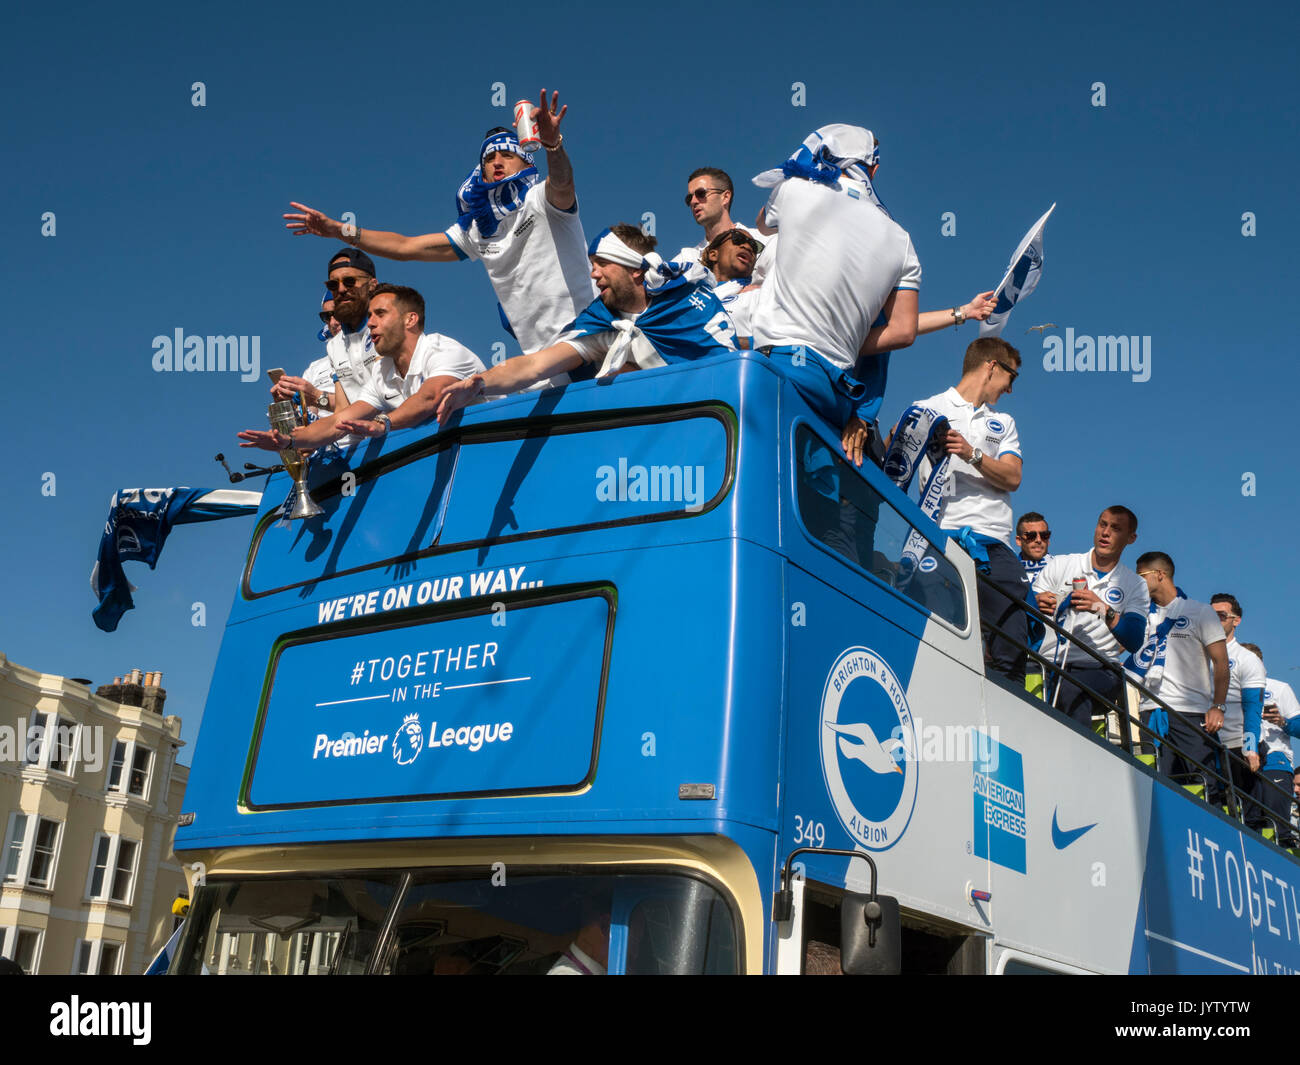 Brighton et Hove Albion, les mouettes, victory procession à travers la ville dans un bus après avoir été promu en Premier League en 2017 Banque D'Images